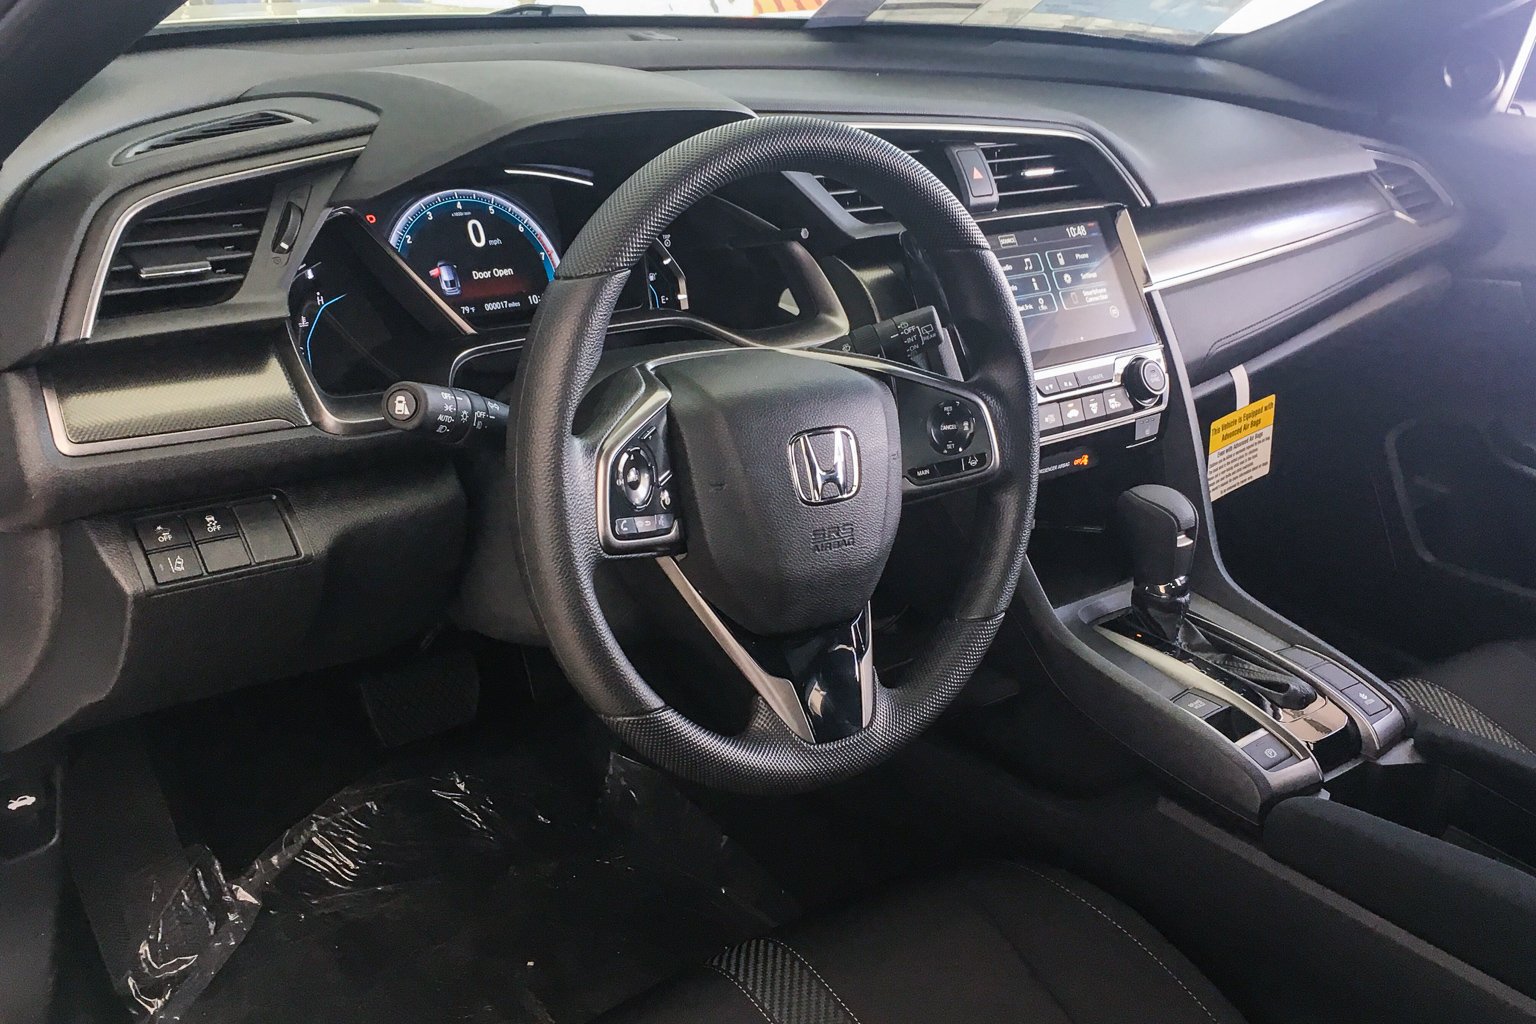 New 2019 Honda Civic Hatchback Ex Fwd Hatchback